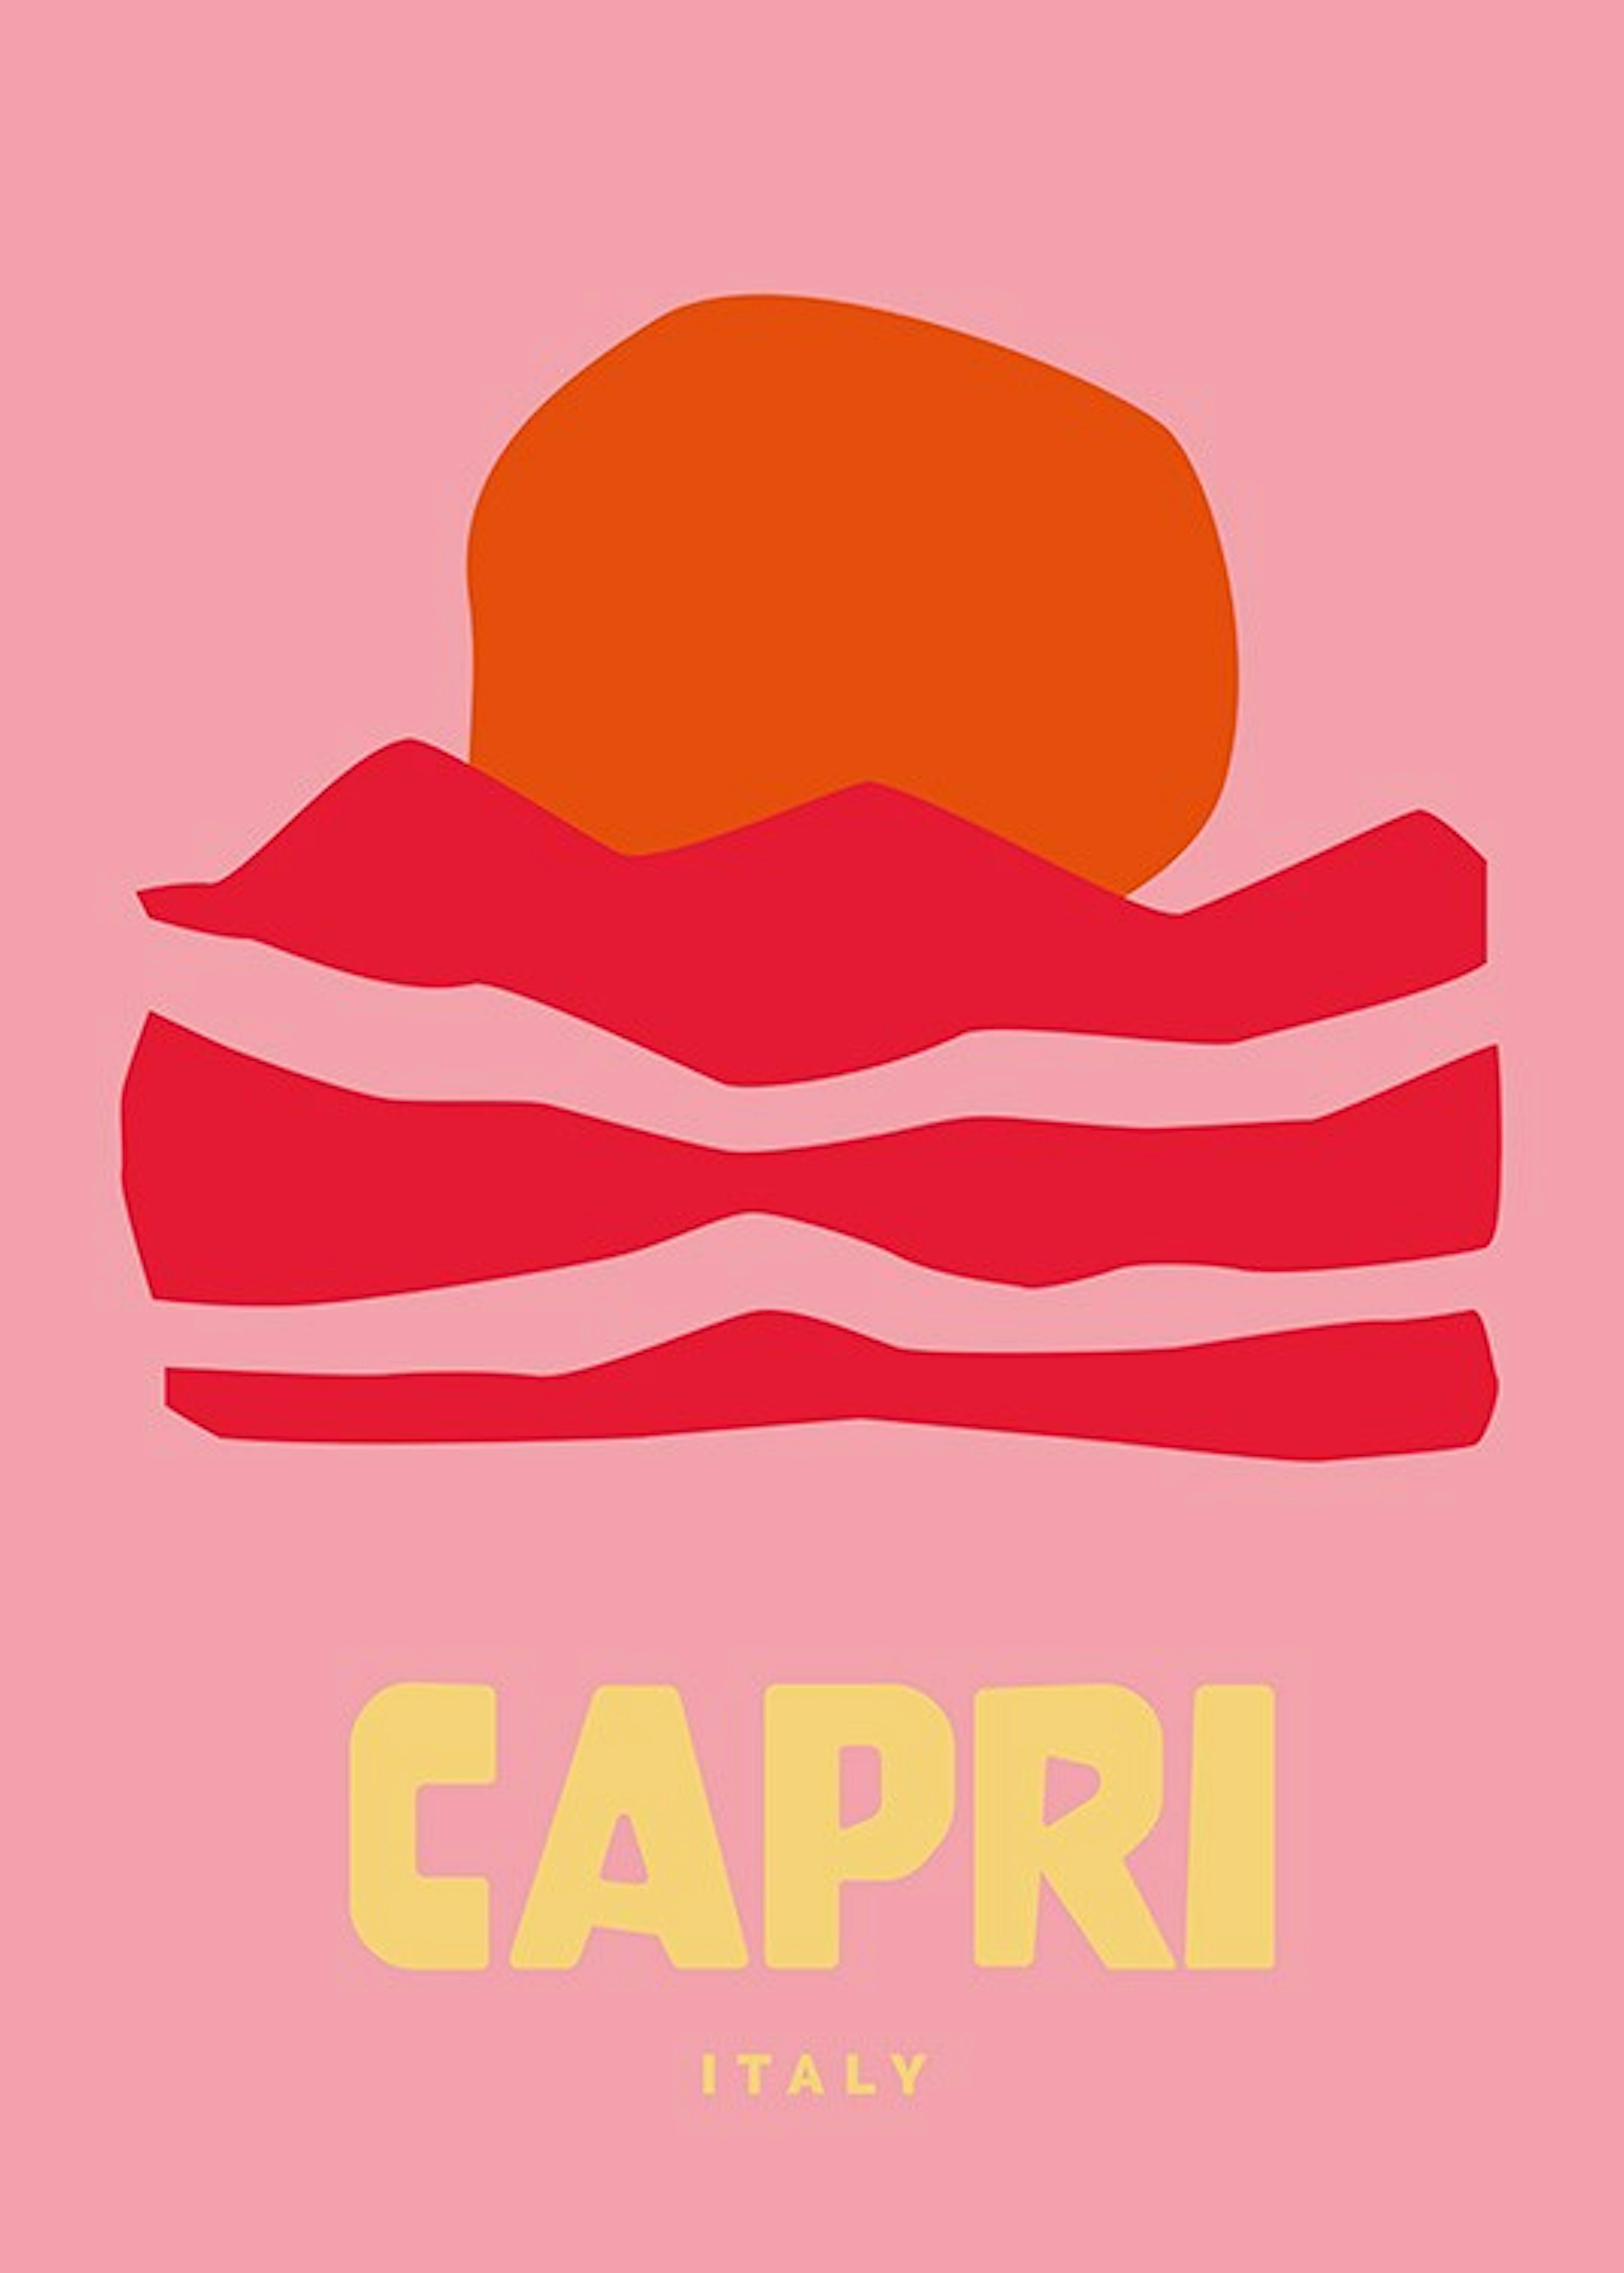 Graphic Capri Affiche 0